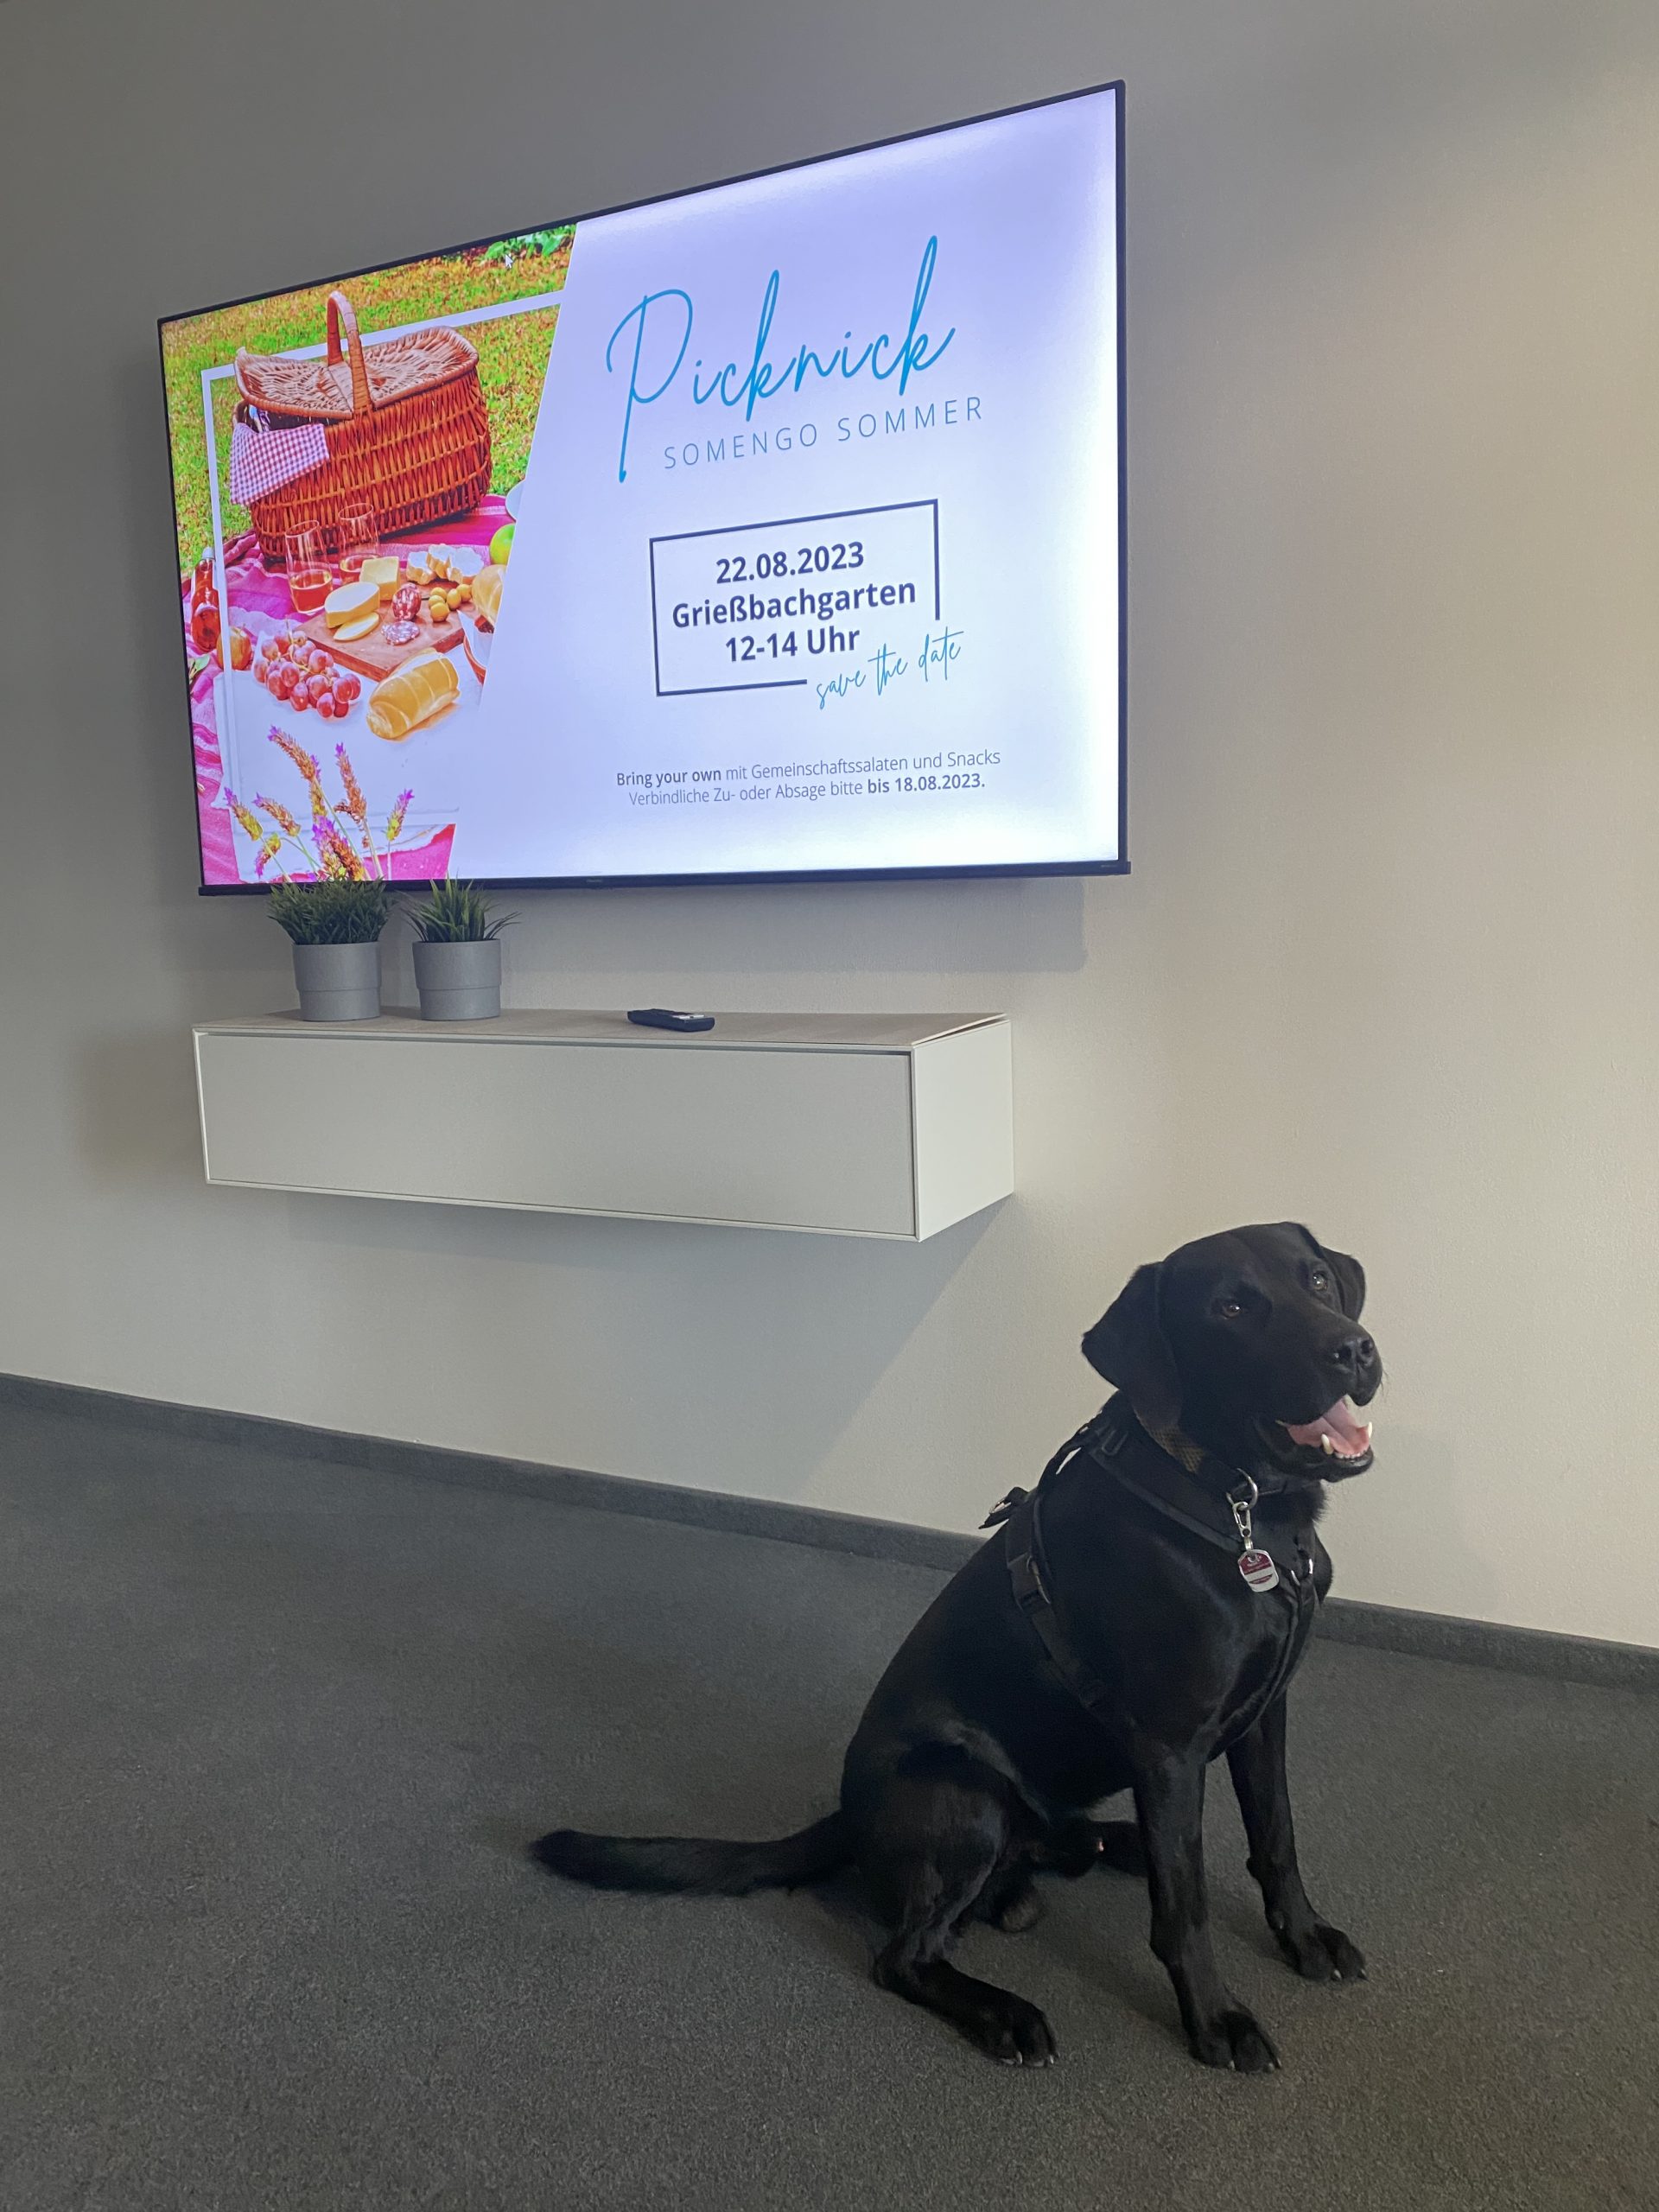 Ein schwarzer Hund sitzt vor einem Fernseher, auf dem ein Bild zu sehen ist